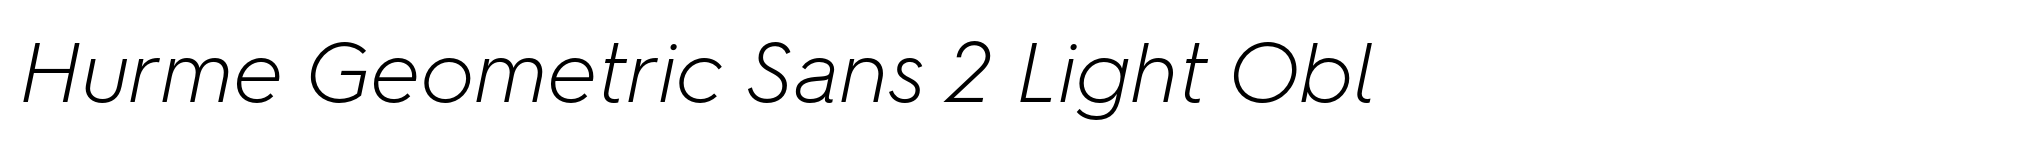 Hurme Geometric Sans 2 Light Obl image